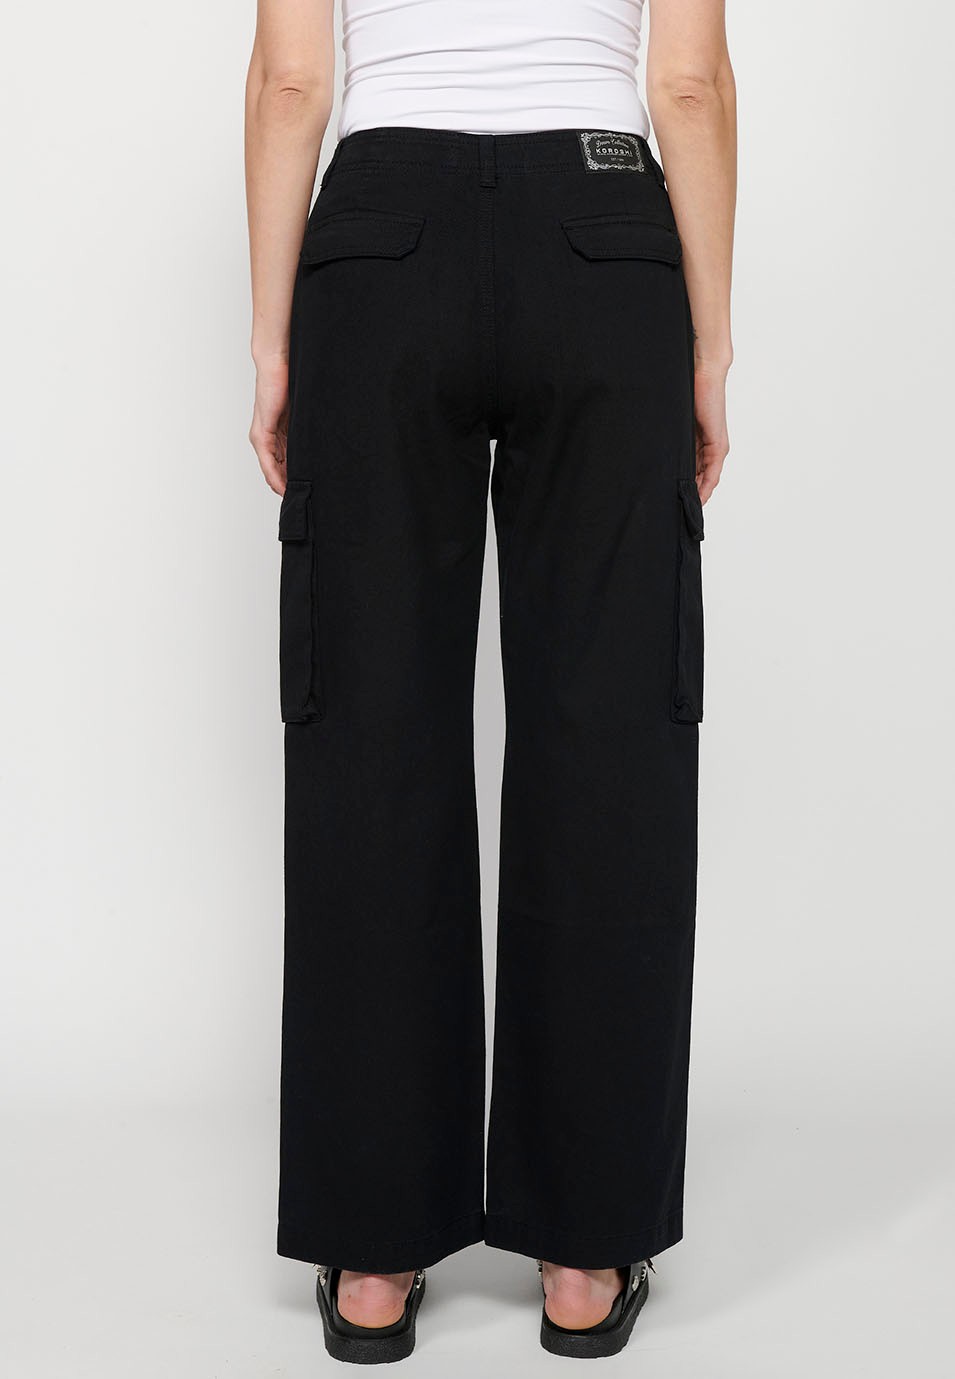 Pantalons llargs amb butxaques càrrec de cotó, color negre per a dona